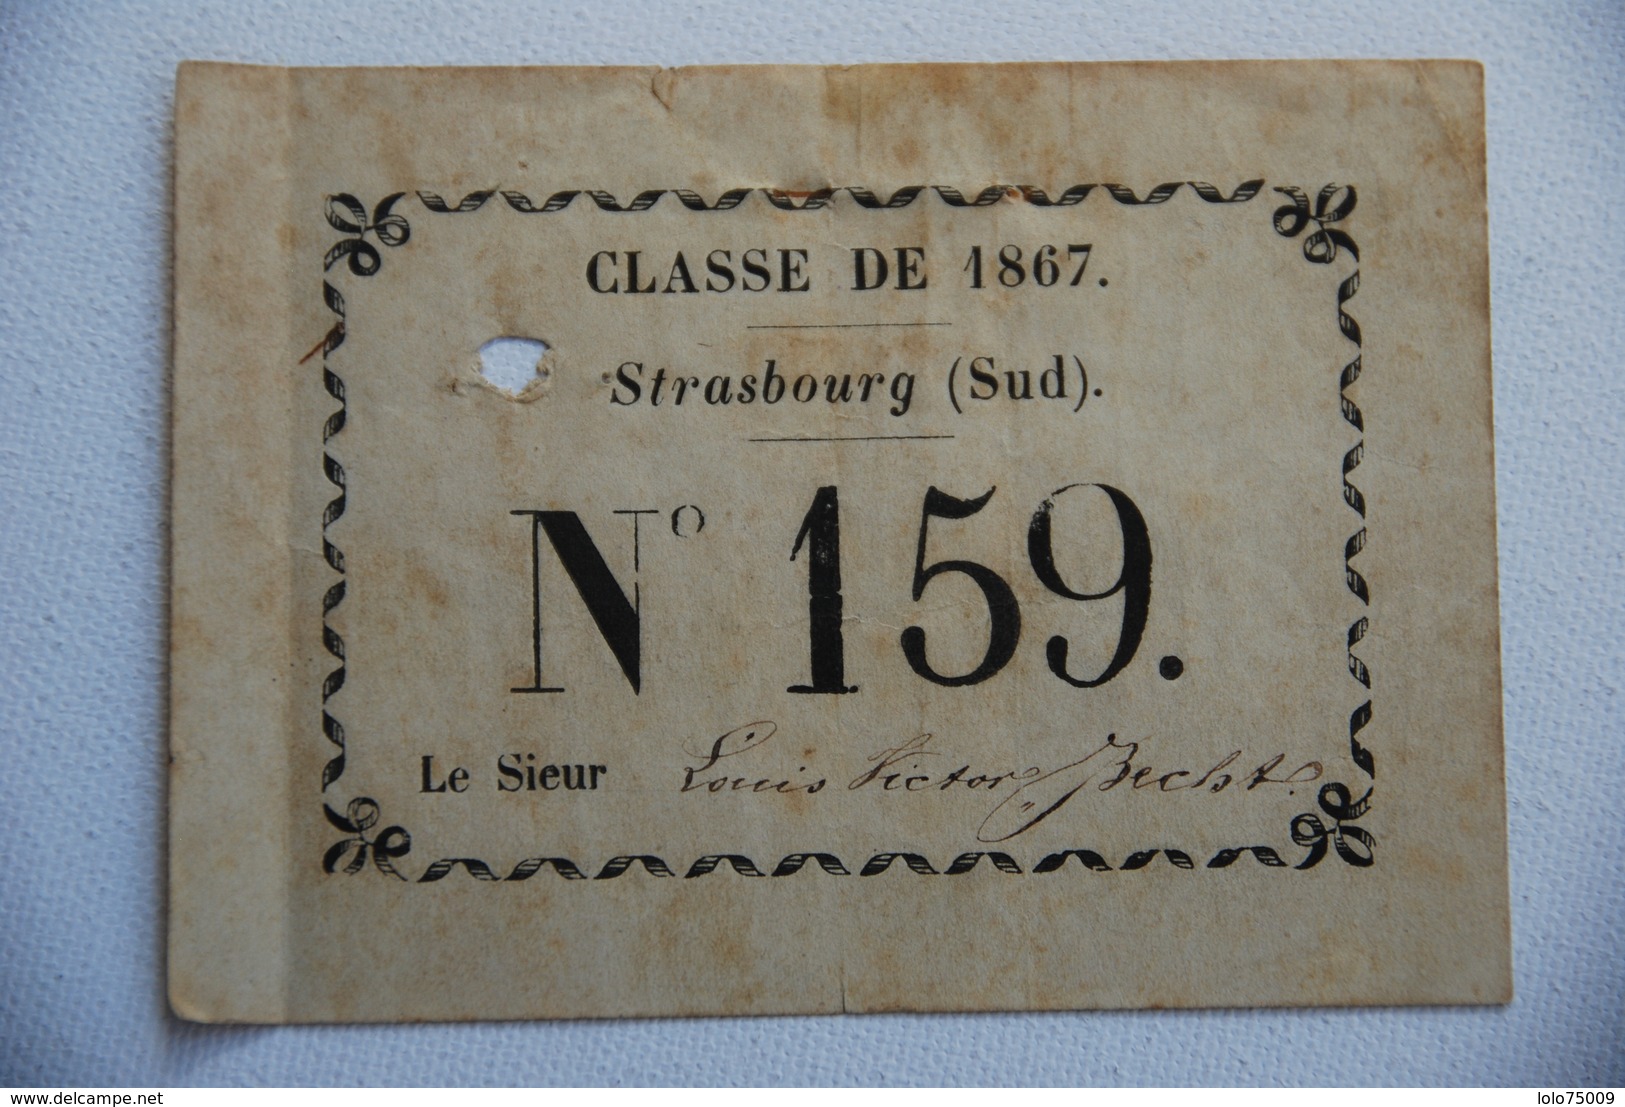 Carte Nominative Classe De 1867 Strasbourg Tres Rare Tirage Au Sort Conscript Conscription - Documentos Históricos